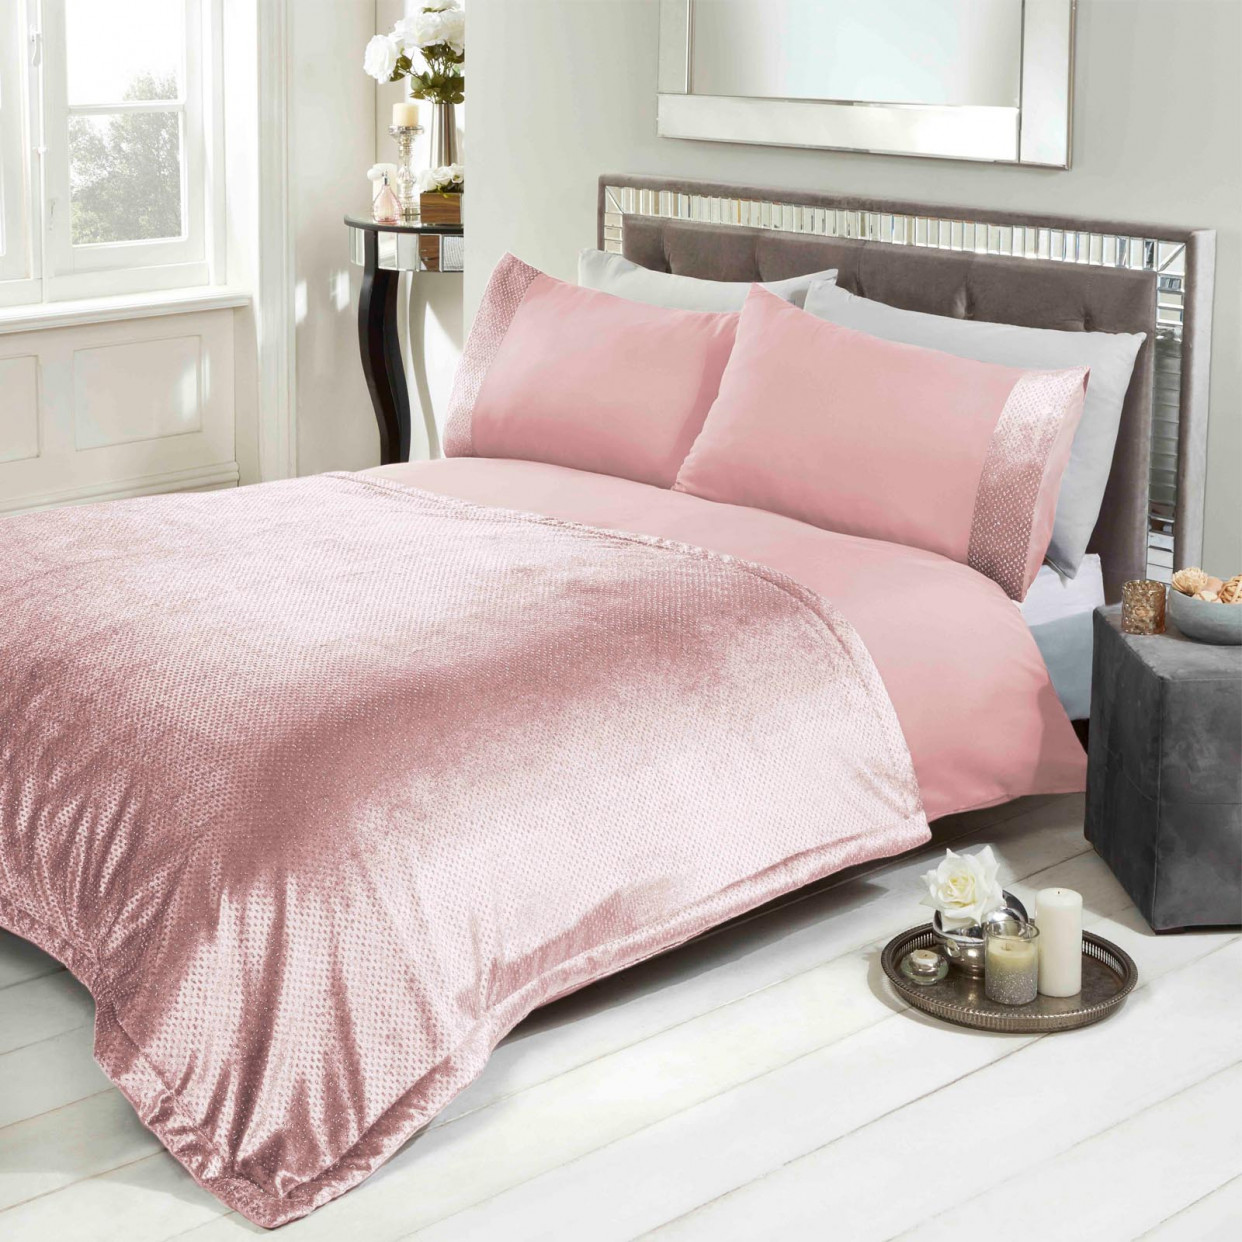 Sienna Glitter Velvet Bedspread Throw - Blush, 150 x 200cm>